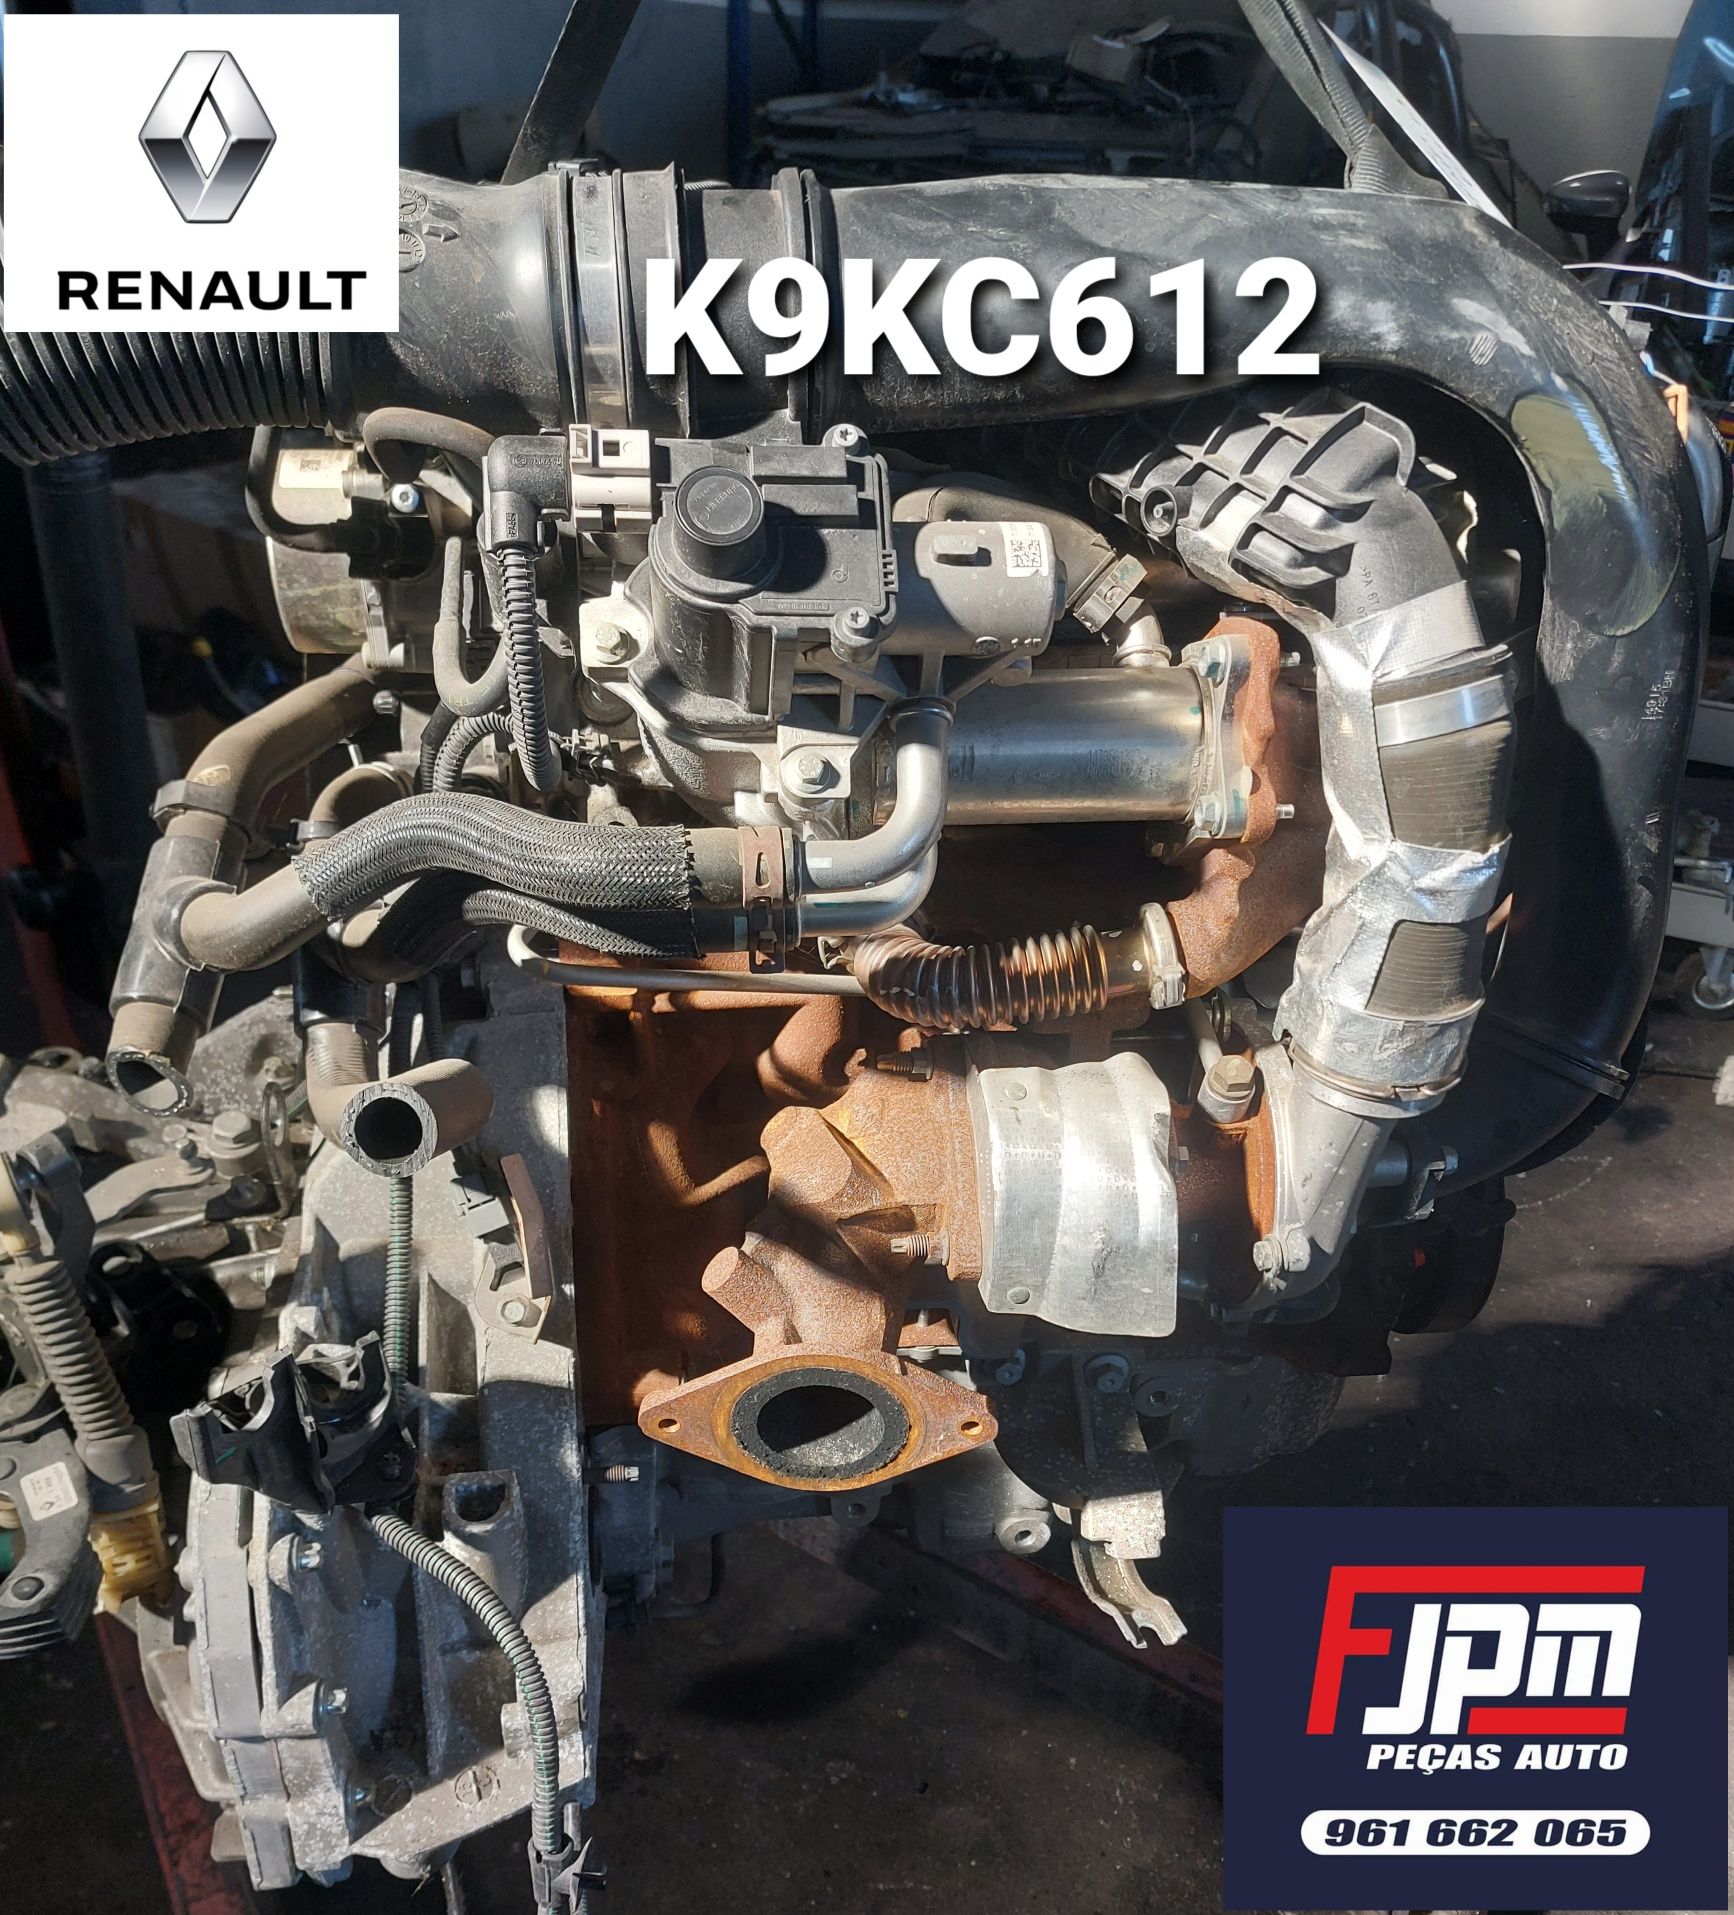 MOTOR RENAULT 1.5 DCI K9KC612